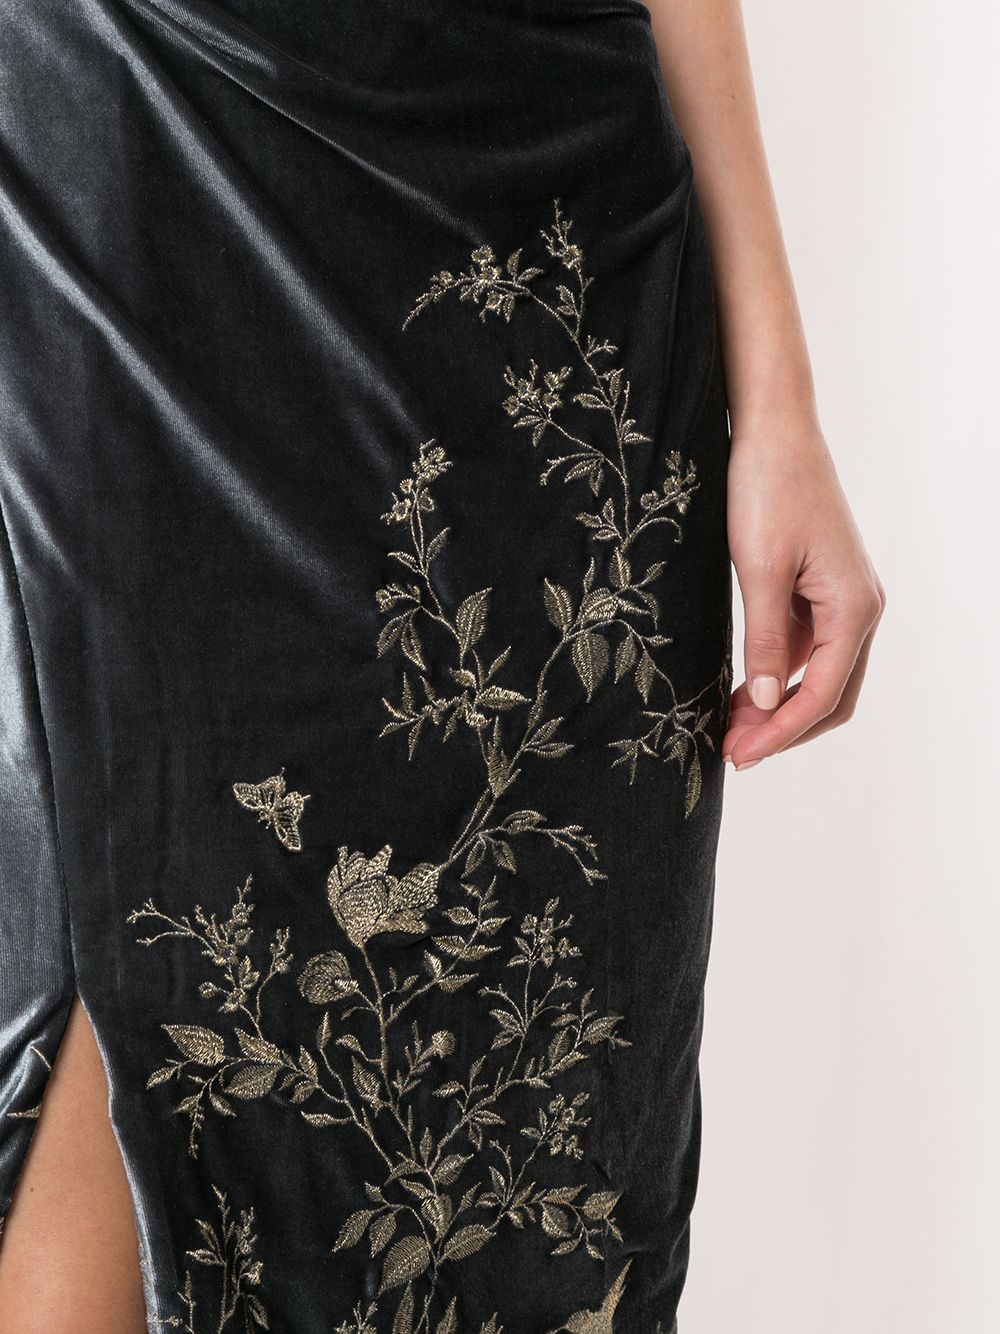 фото Marchesa notte бархатное платье с цветочной вышивкой